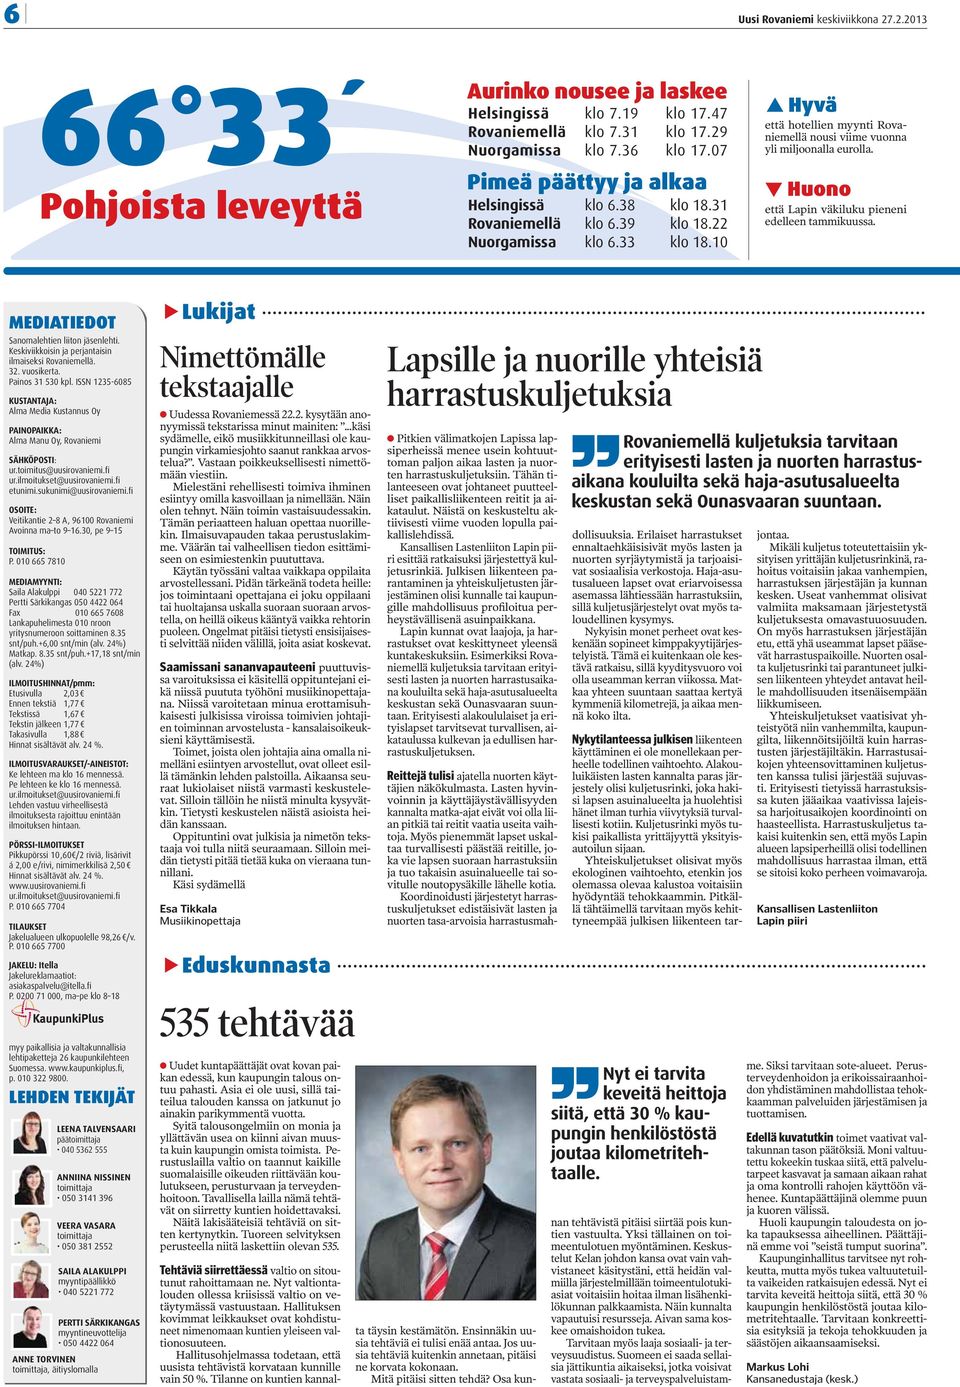 10 Hyvä että hotellien myynti Rovaniemellä nousi viime vuonna yli miljoonalla eurolla. Huono että Lapin väkiluku pieneni edelleen tammikuussa. MEDIATIEDOT Sanomalehtien liiton jäsenlehti.